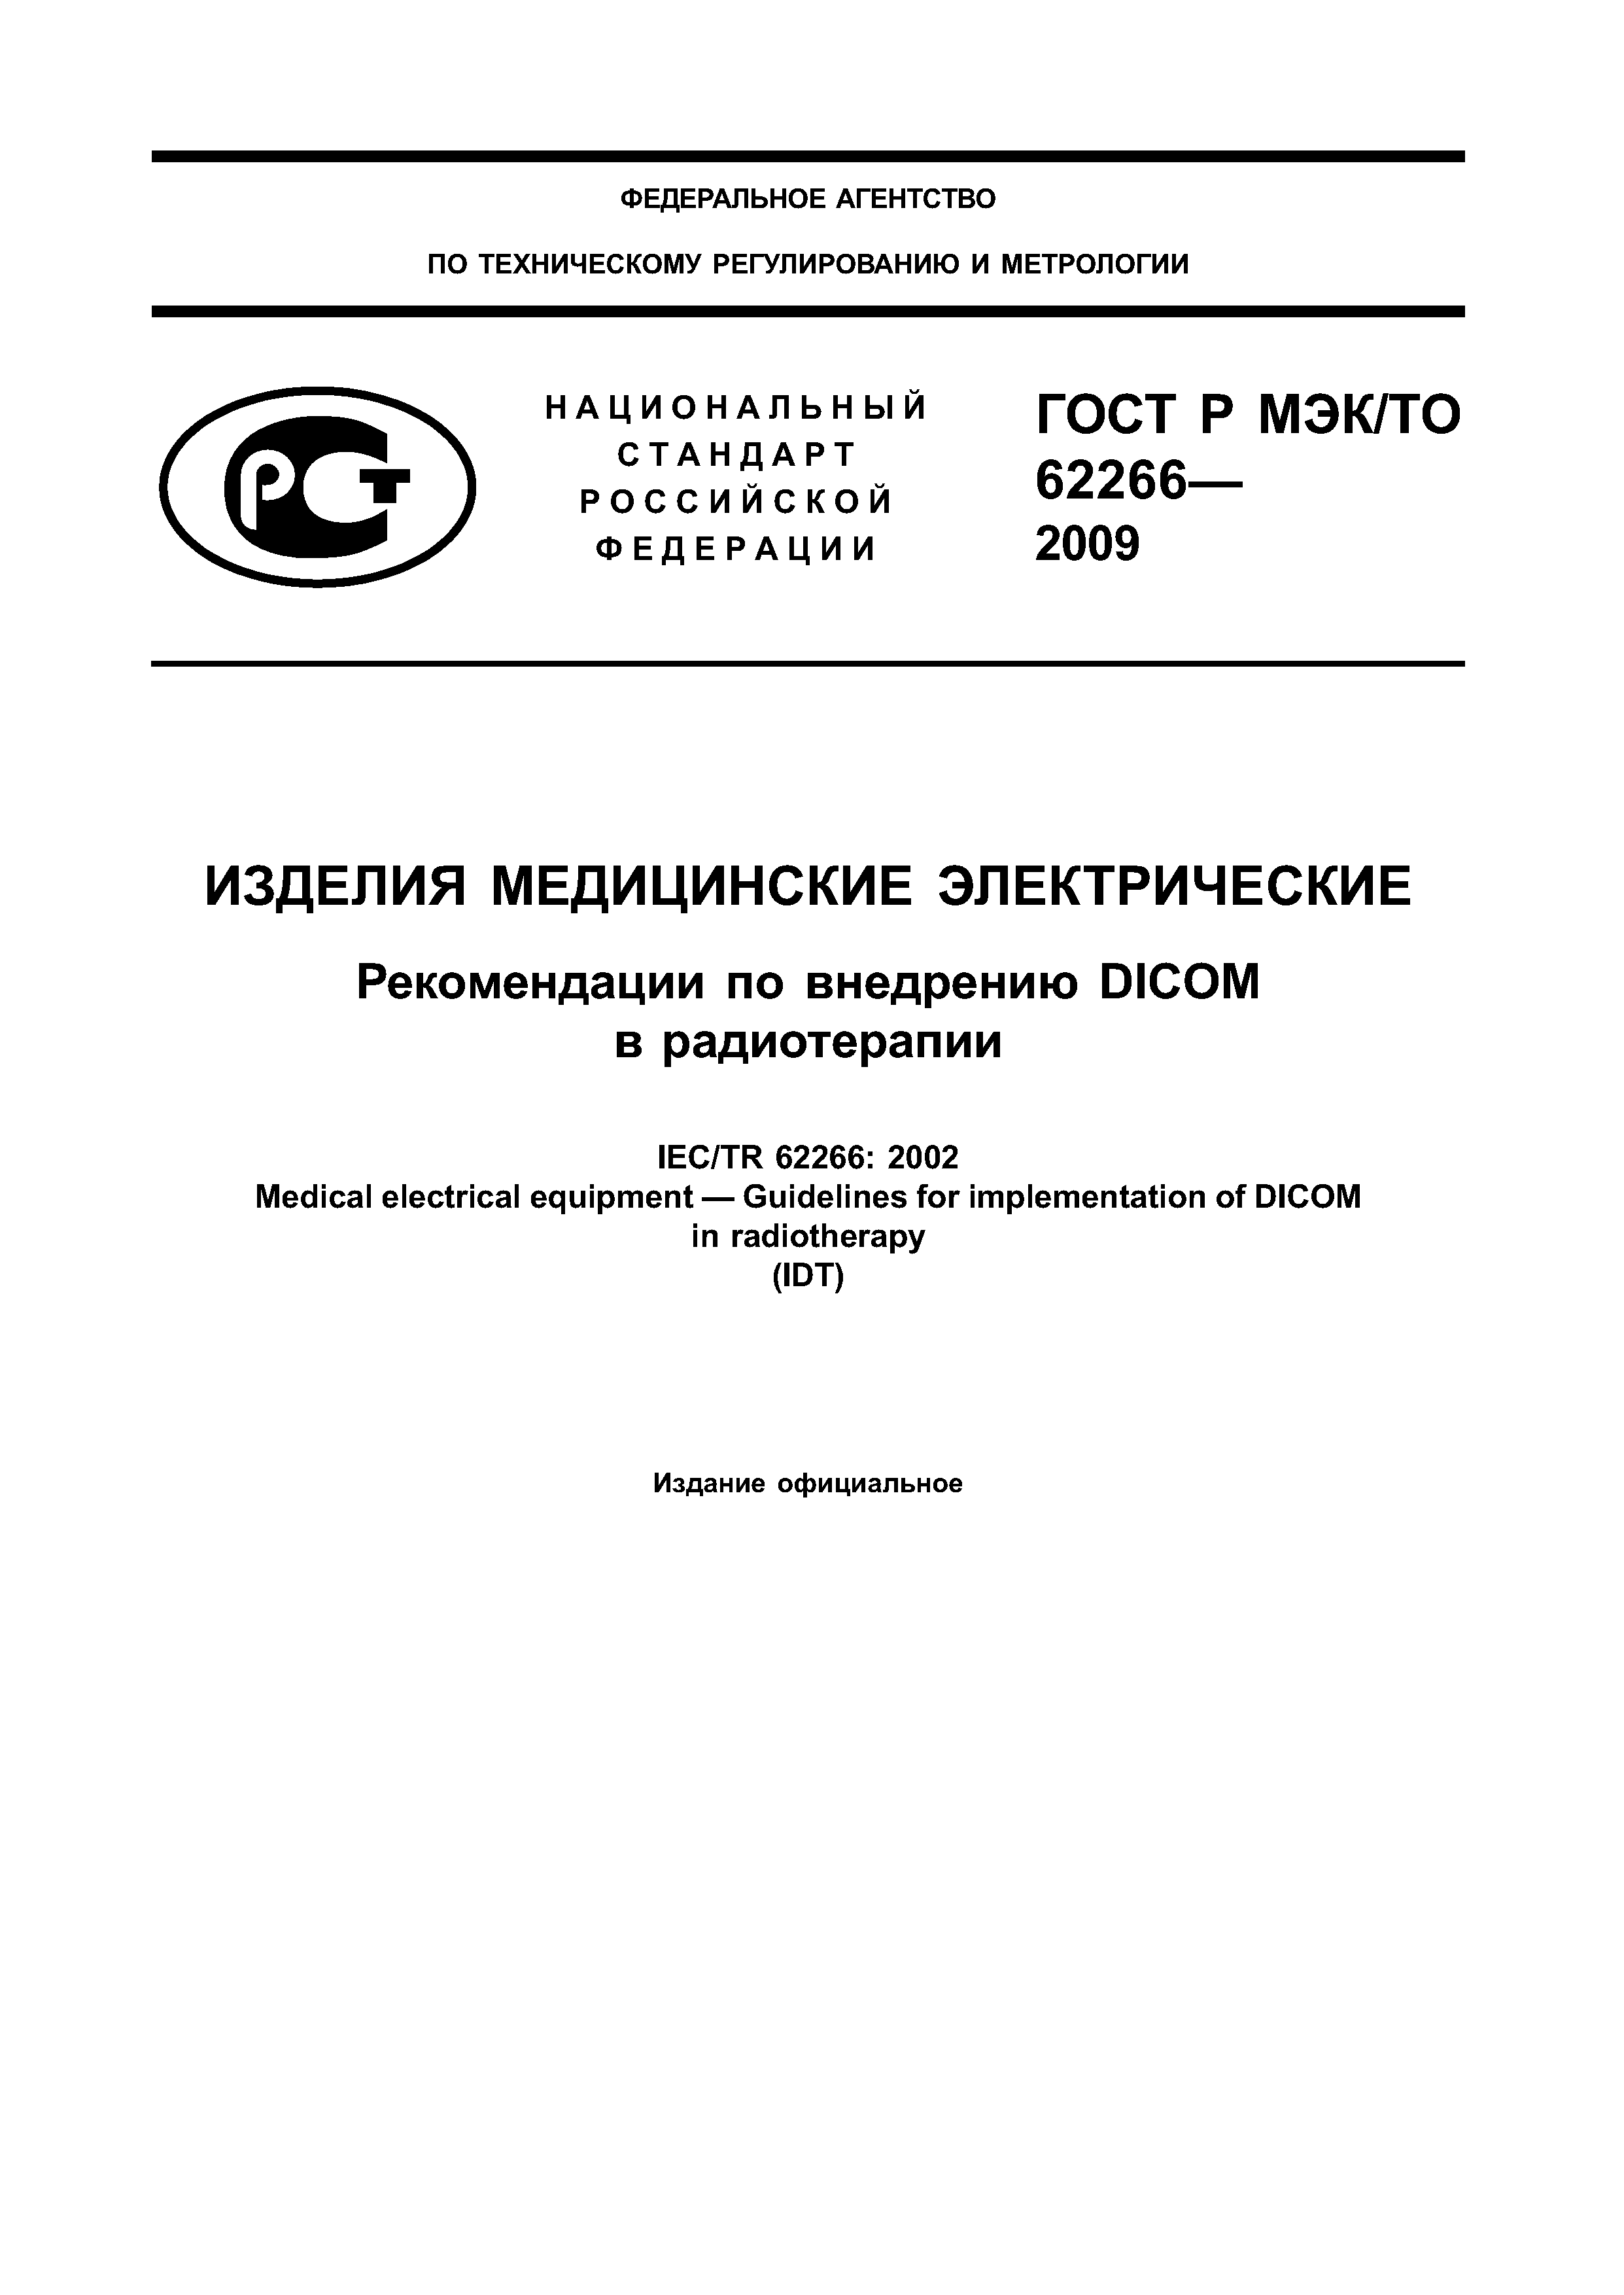 ГОСТ Р МЭК/ТО 62266-2009